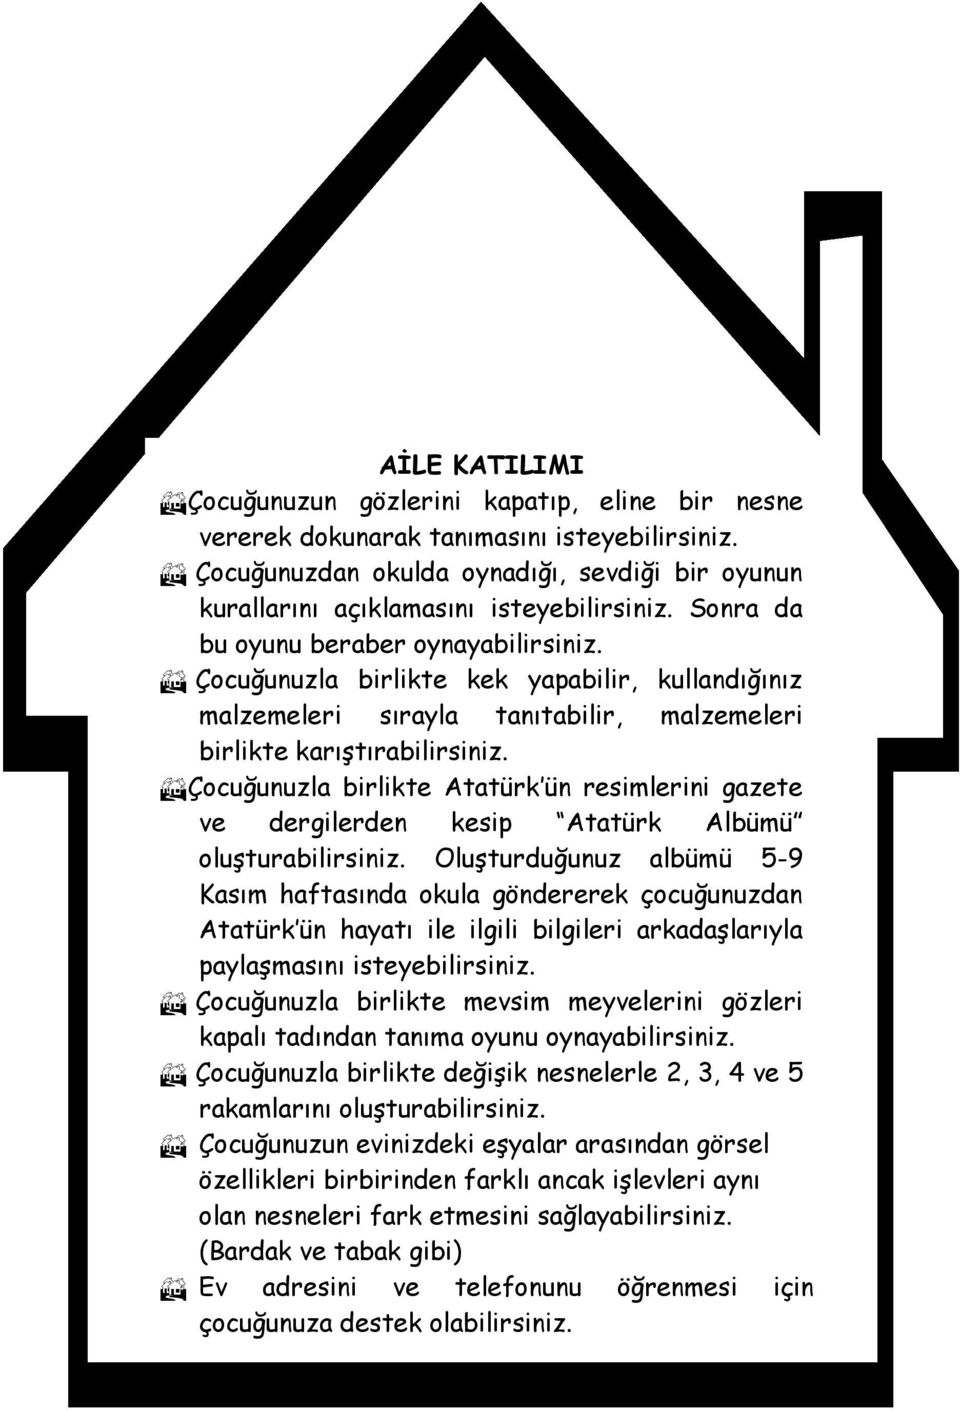 Çocuğunuzla birlikte Atatürk ün resimlerini gazete ve dergilerden kesip Atatürk Albümü oluşturabilirsiniz.